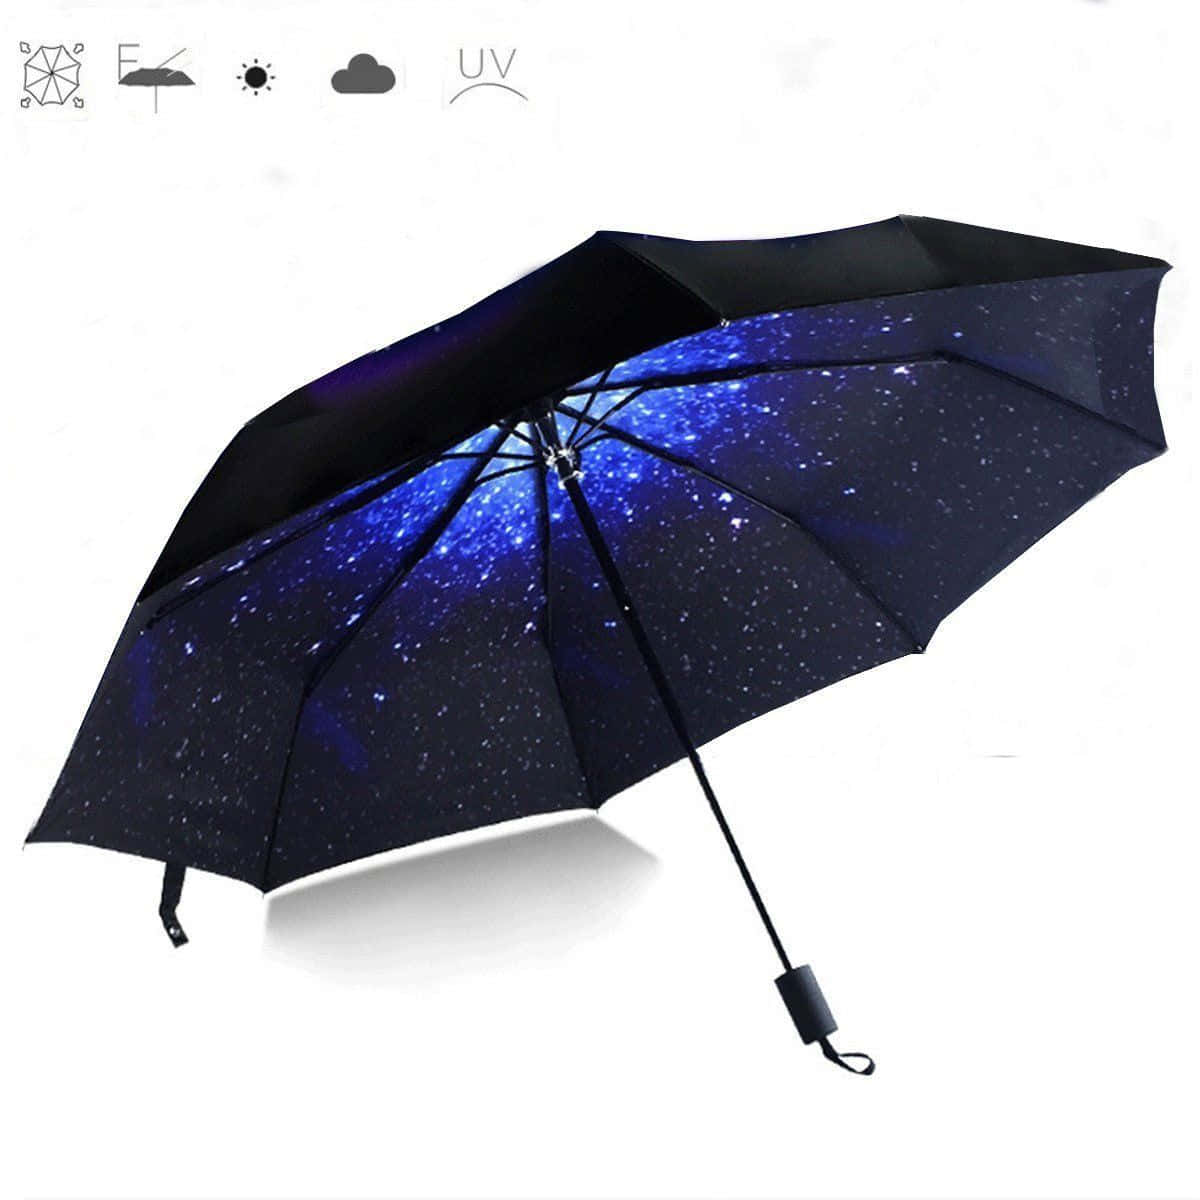 A Blue Umbrella With A Starry Sky Design